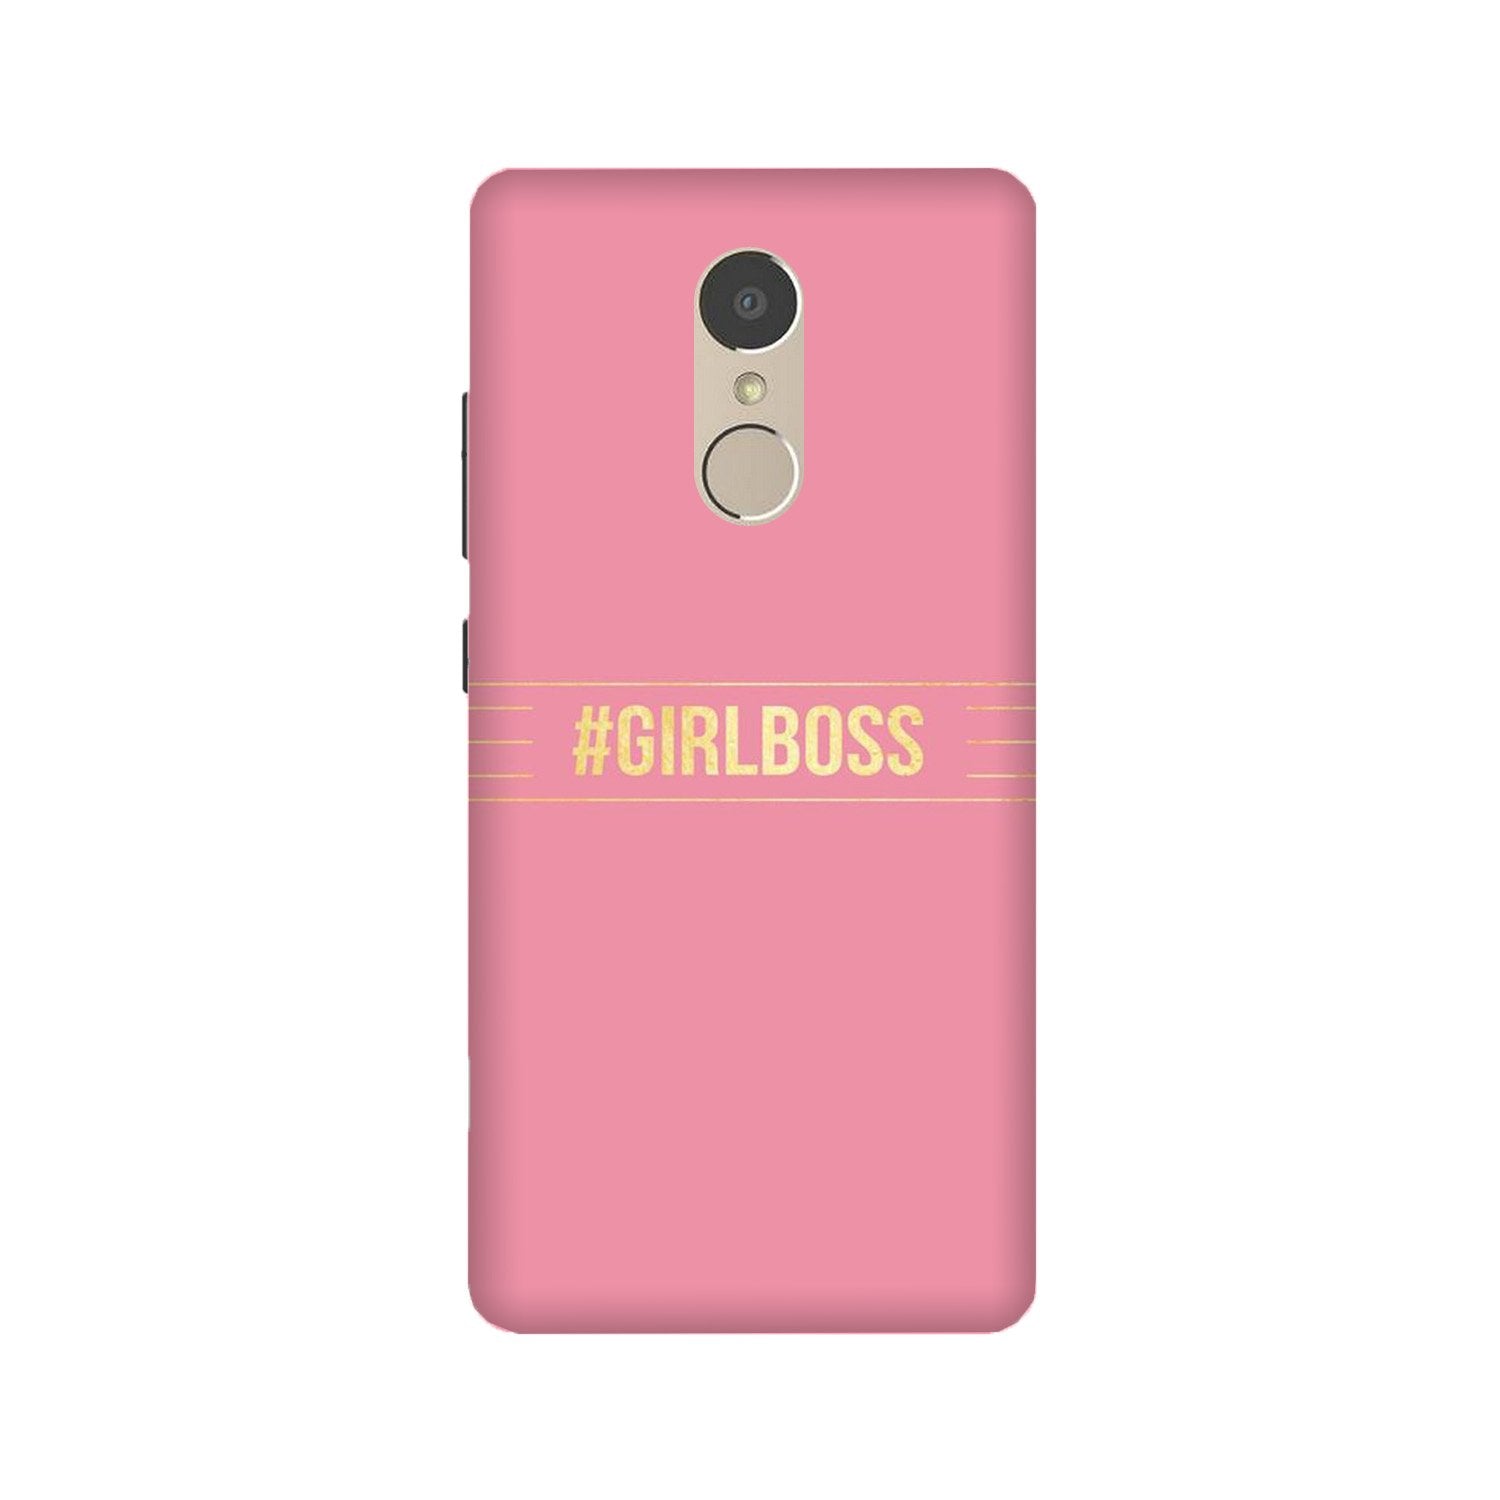 Girl Boss Pink Case for Lenovo K6 Note (Design No. 263)